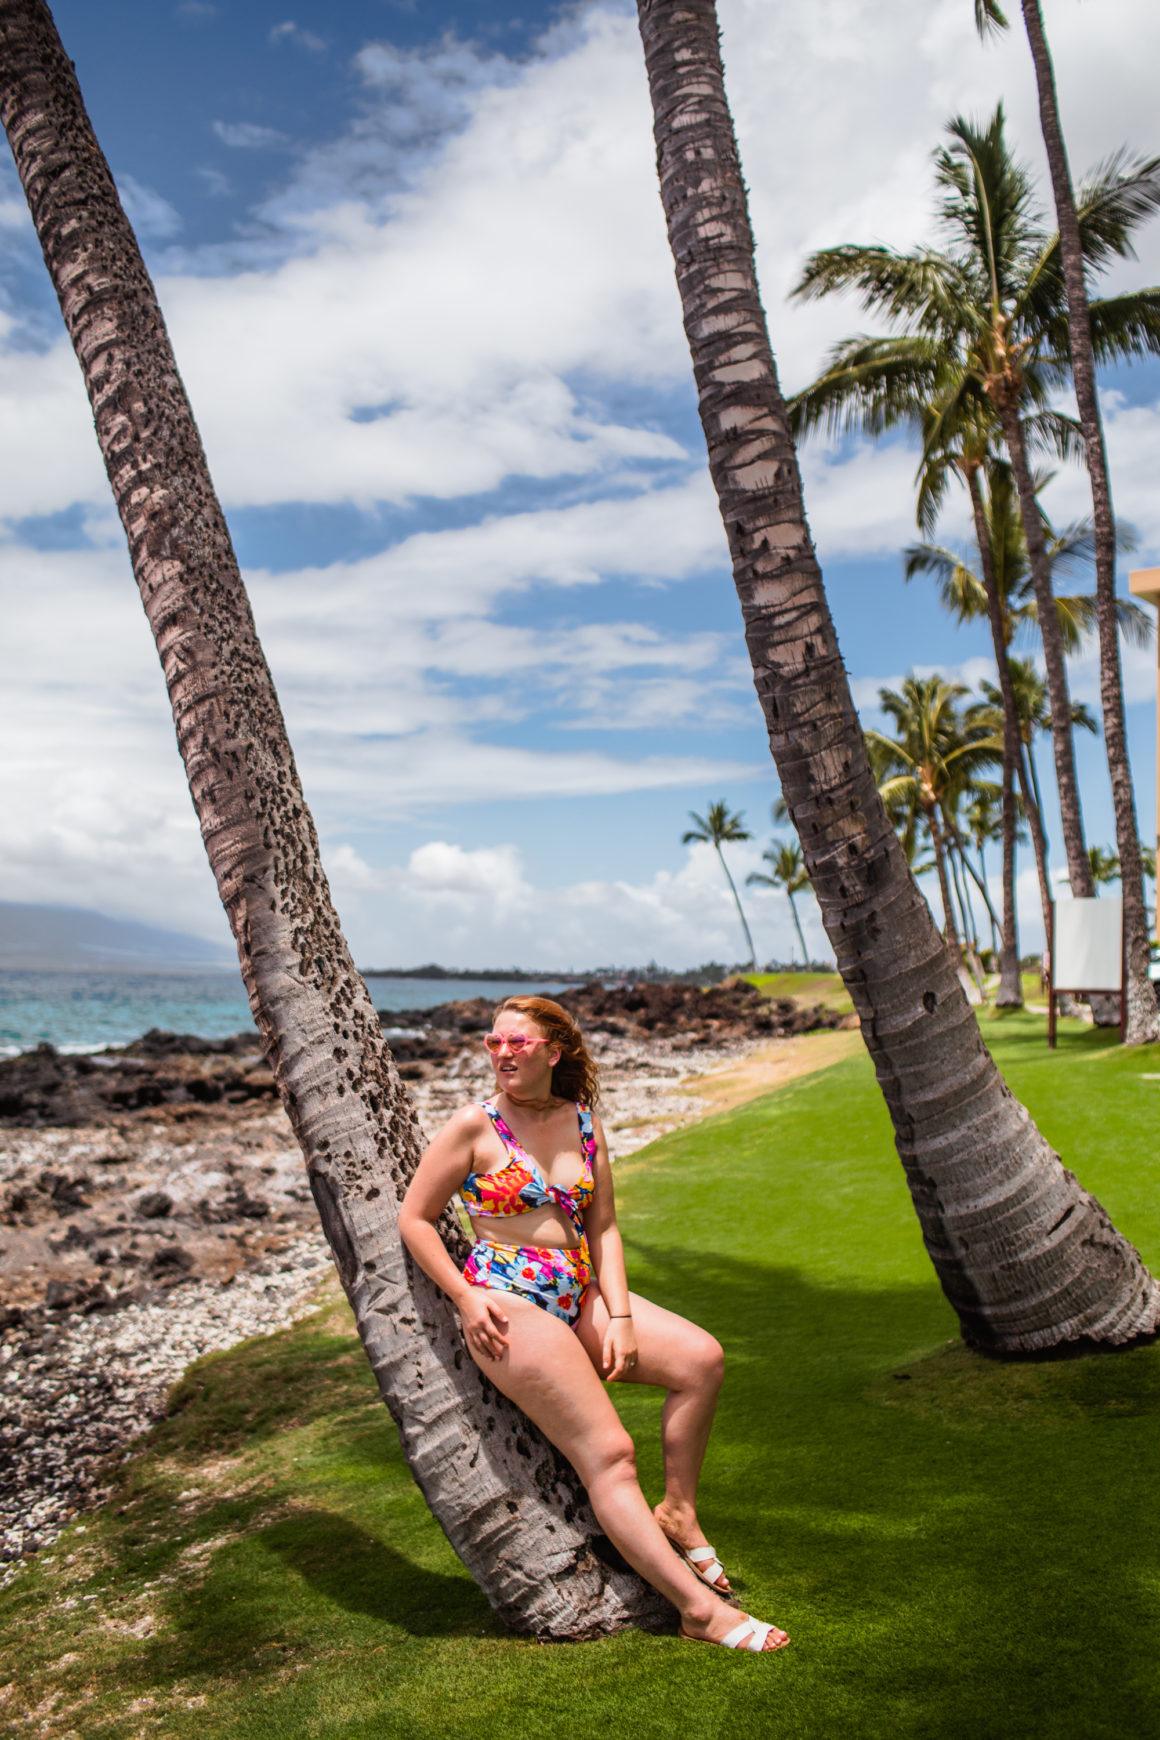 Vibrant floral bikini on the beaches of Maui